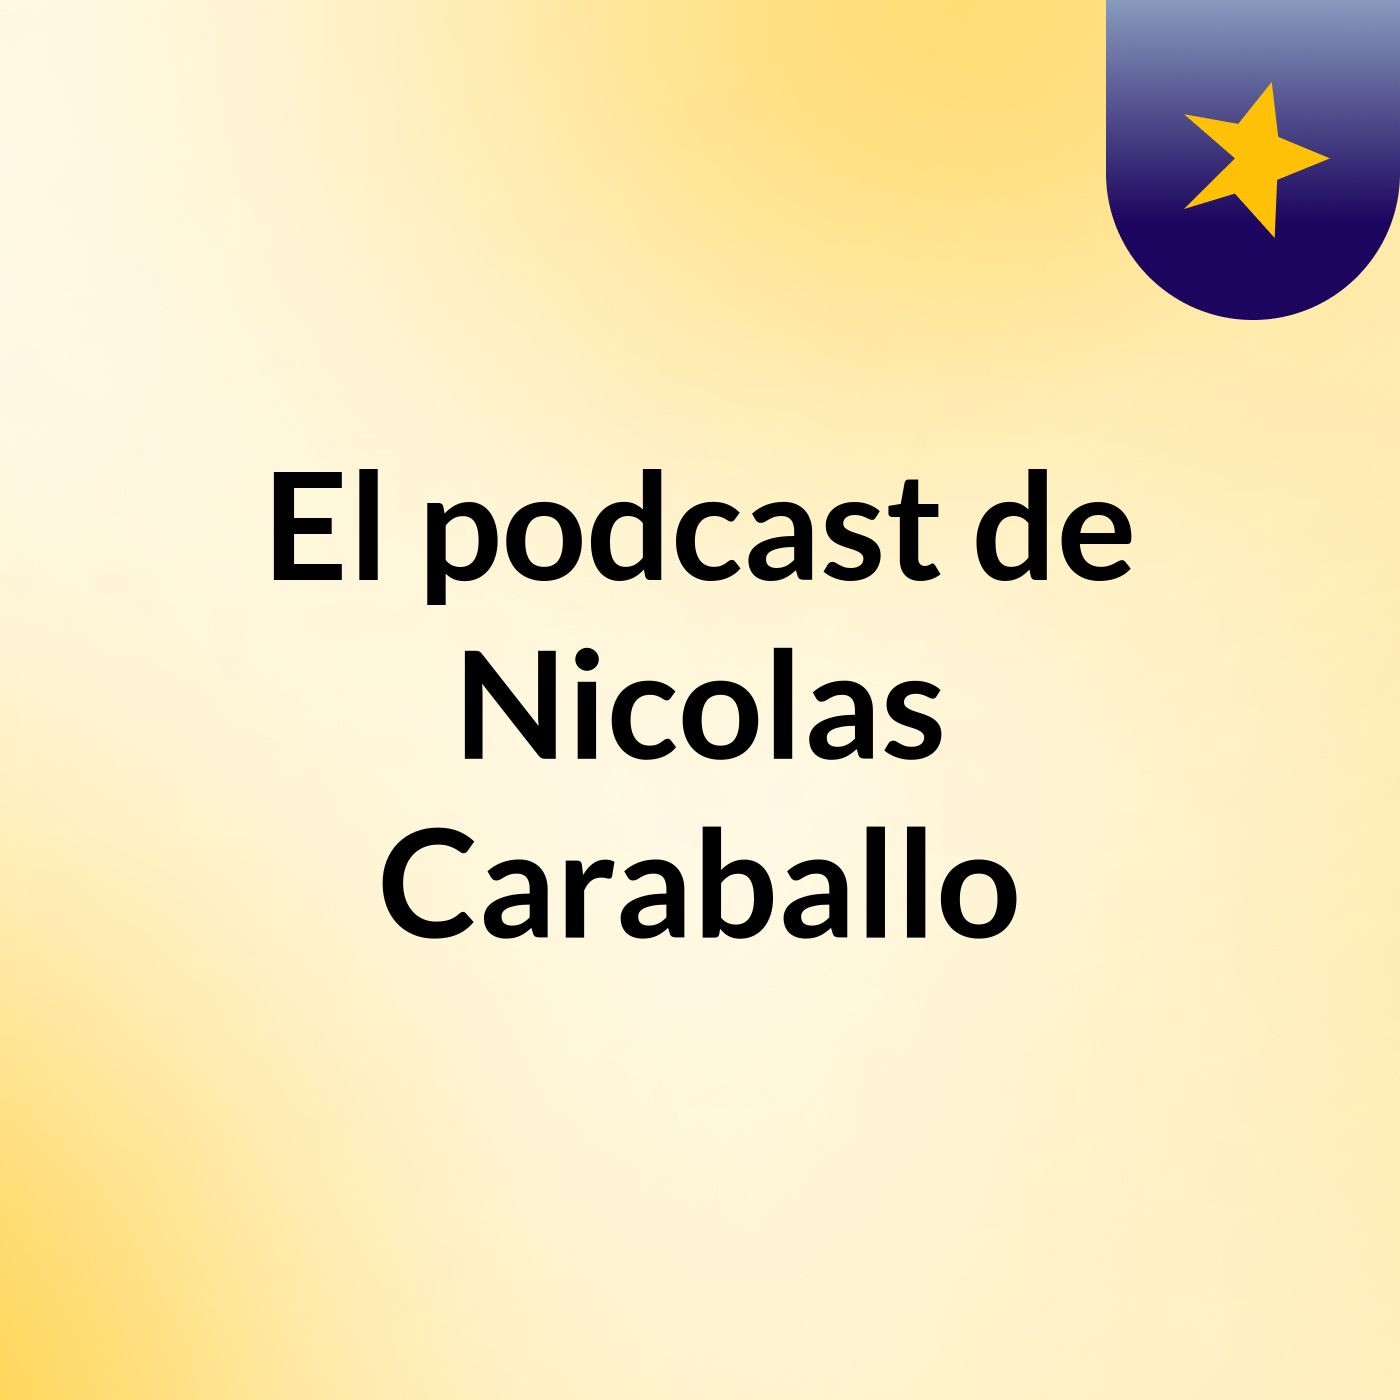 Episodio 55 - El podcast de Nicolas Caraballo